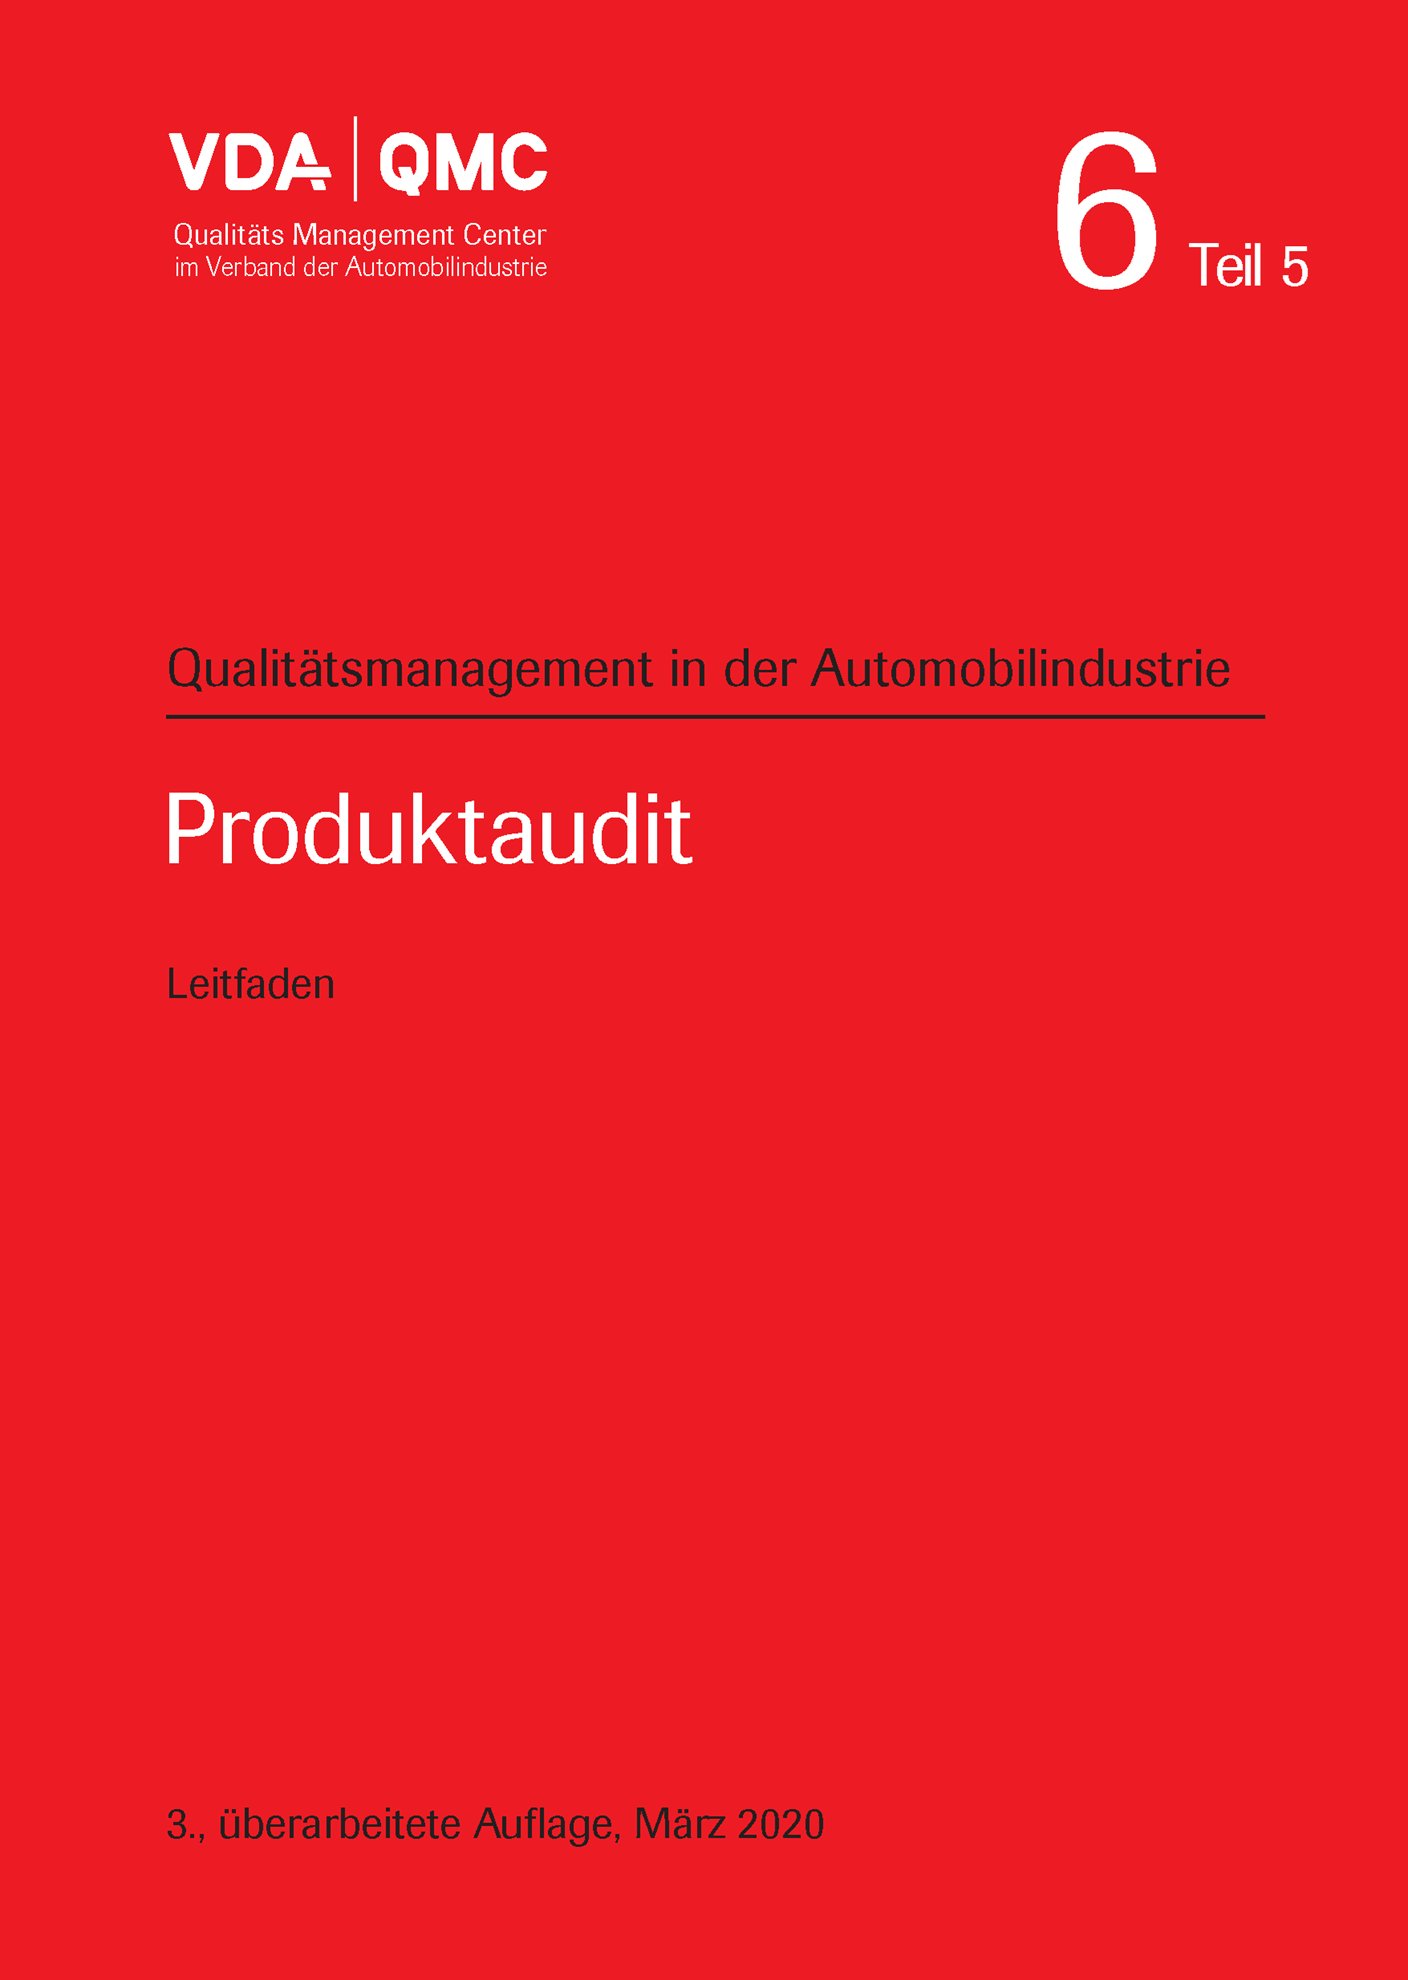 Publikácie  VDA Band 6 Teil 5 - Produktaudit, 3. überarbeitete Auflage, März 2020 1.3.2020 náhľad